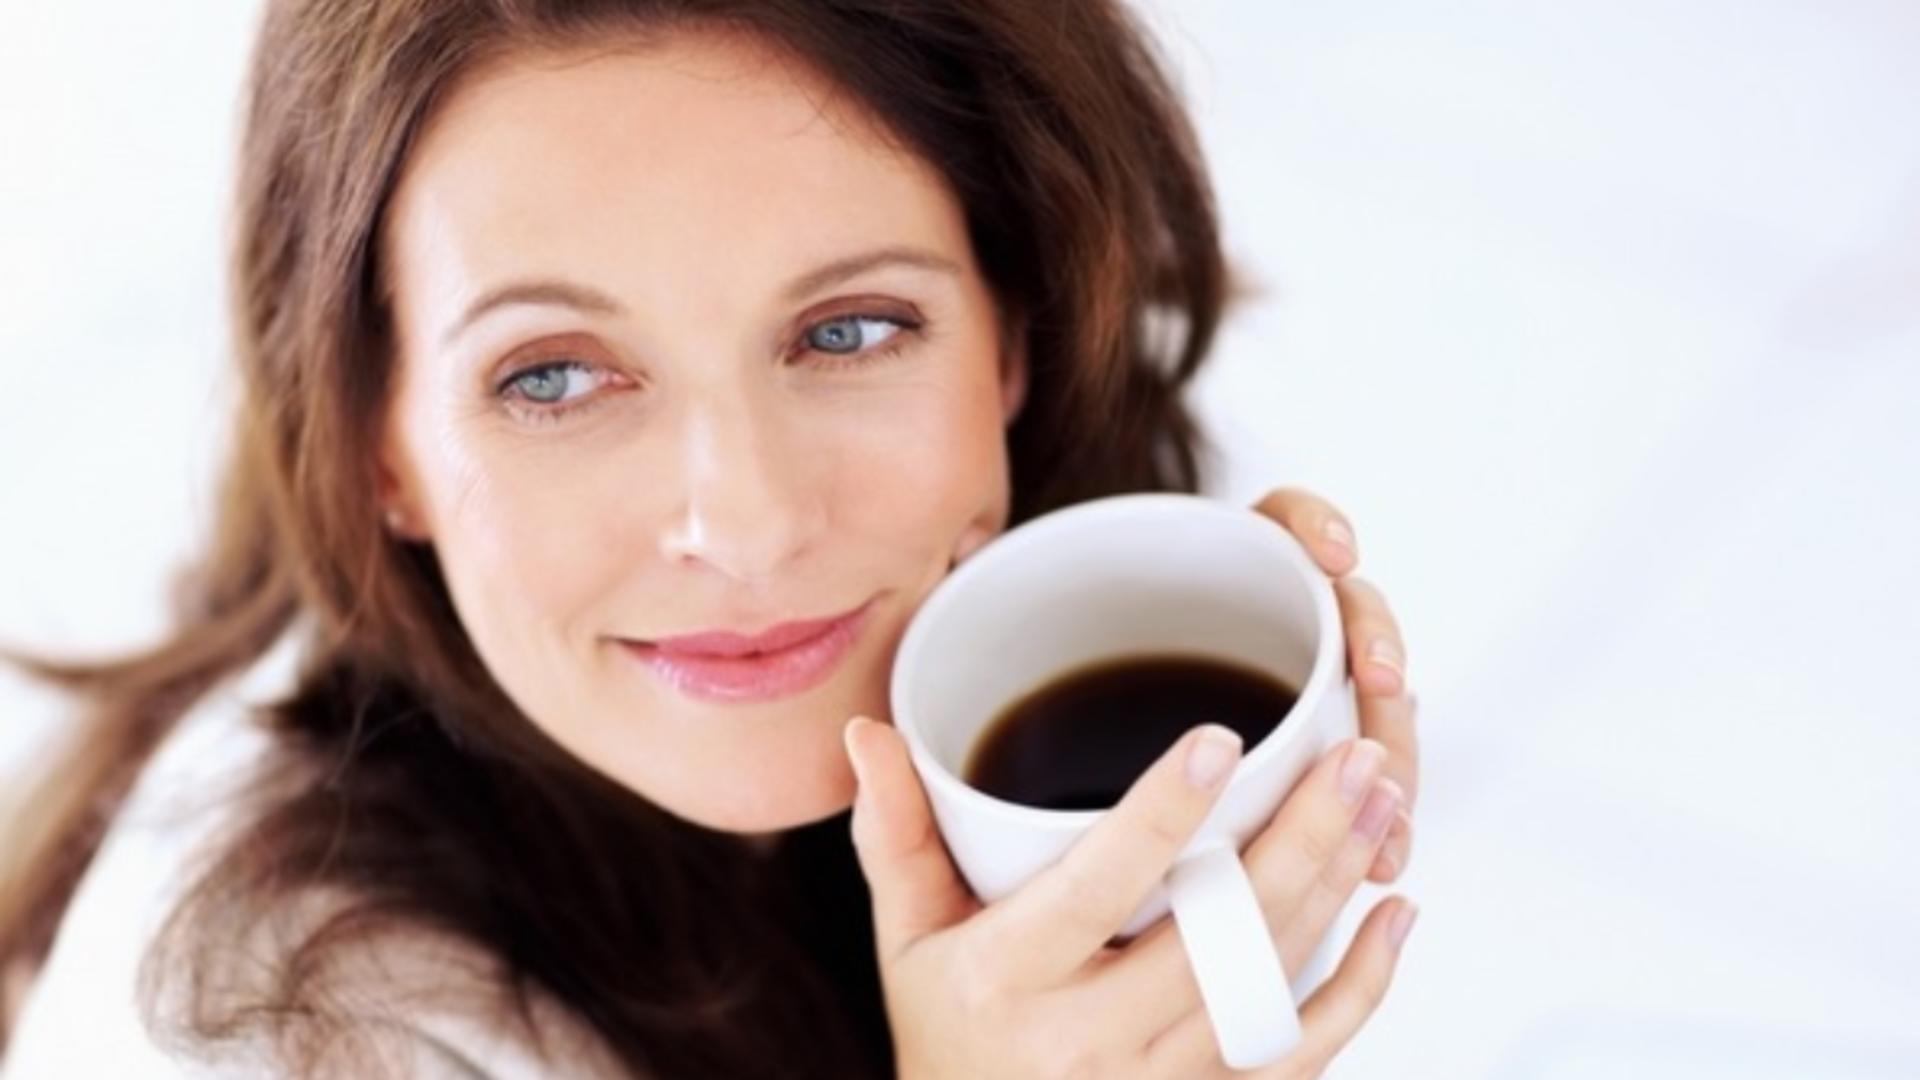 Ce se întâmplă dacă bei cafeaua înainte de micul dejun?